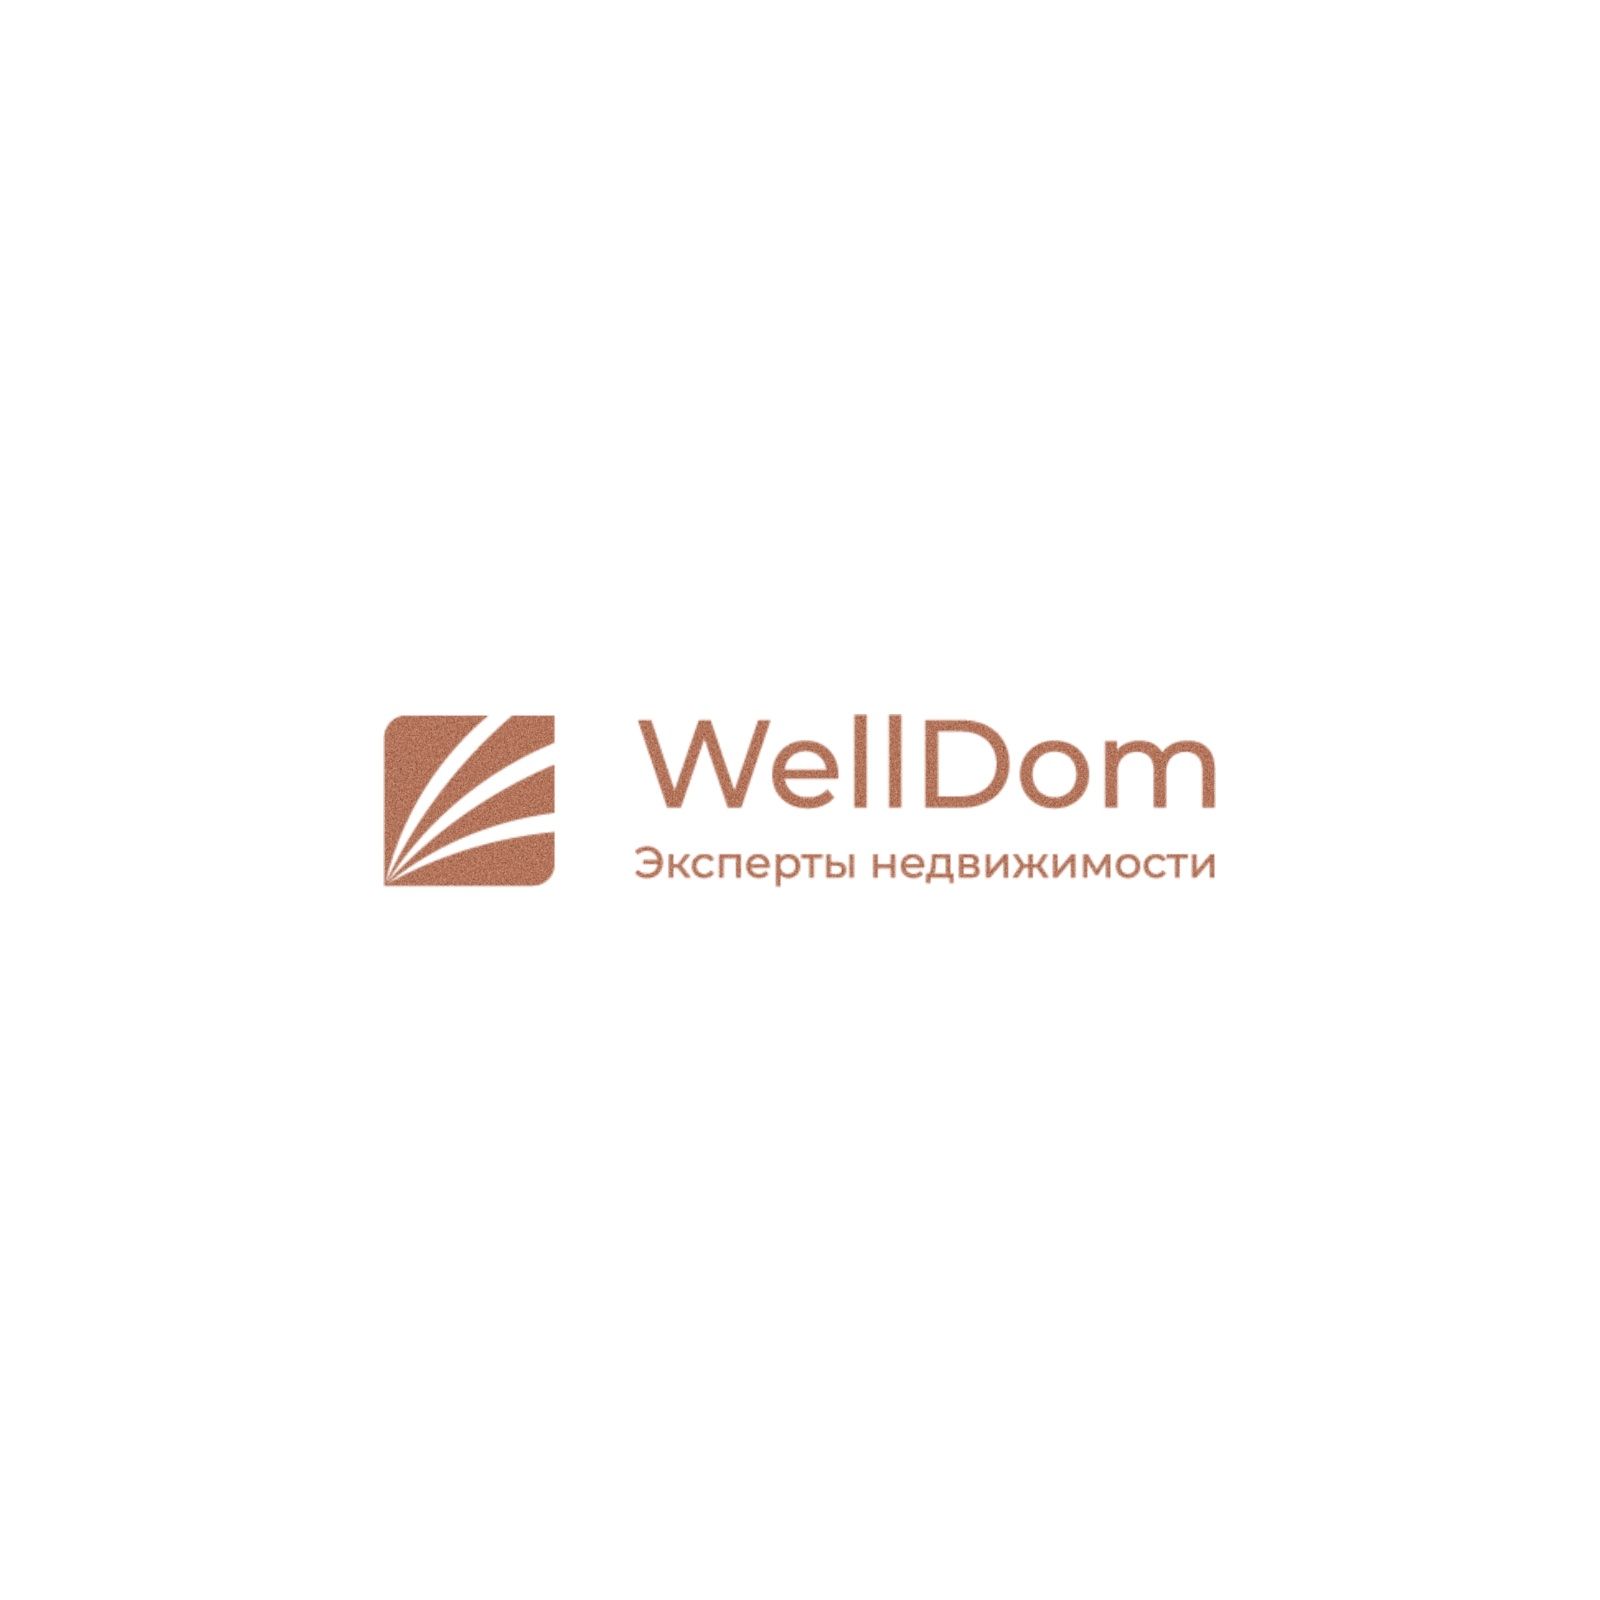 Логотип для WellDom  - дизайнер llogofix